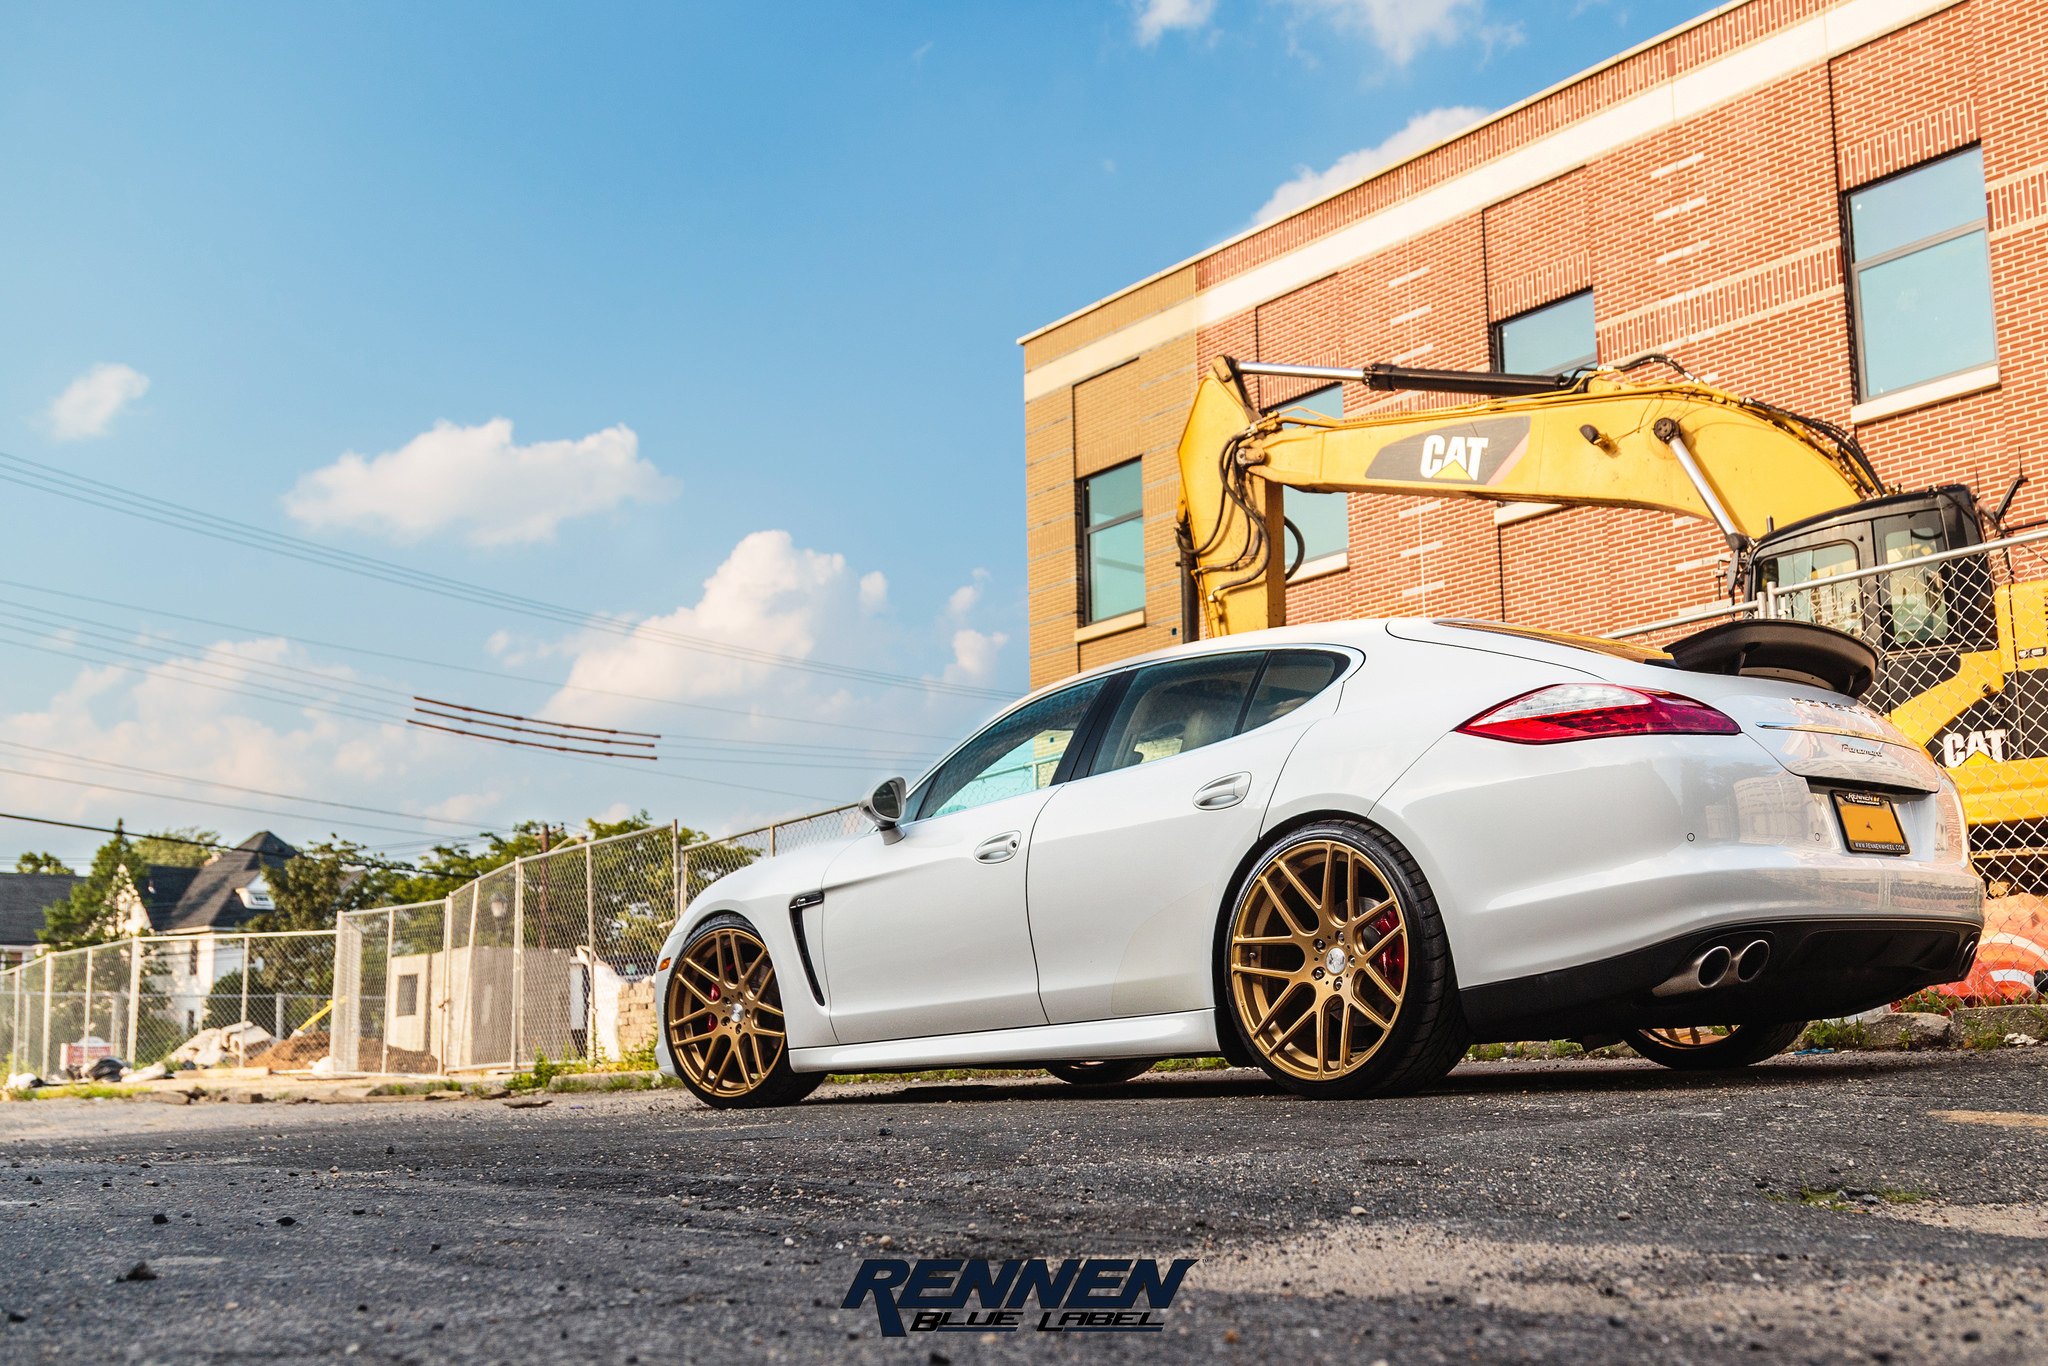 Gold Rennen Wheels on White Porsche Panamera - Photo by Rennen International